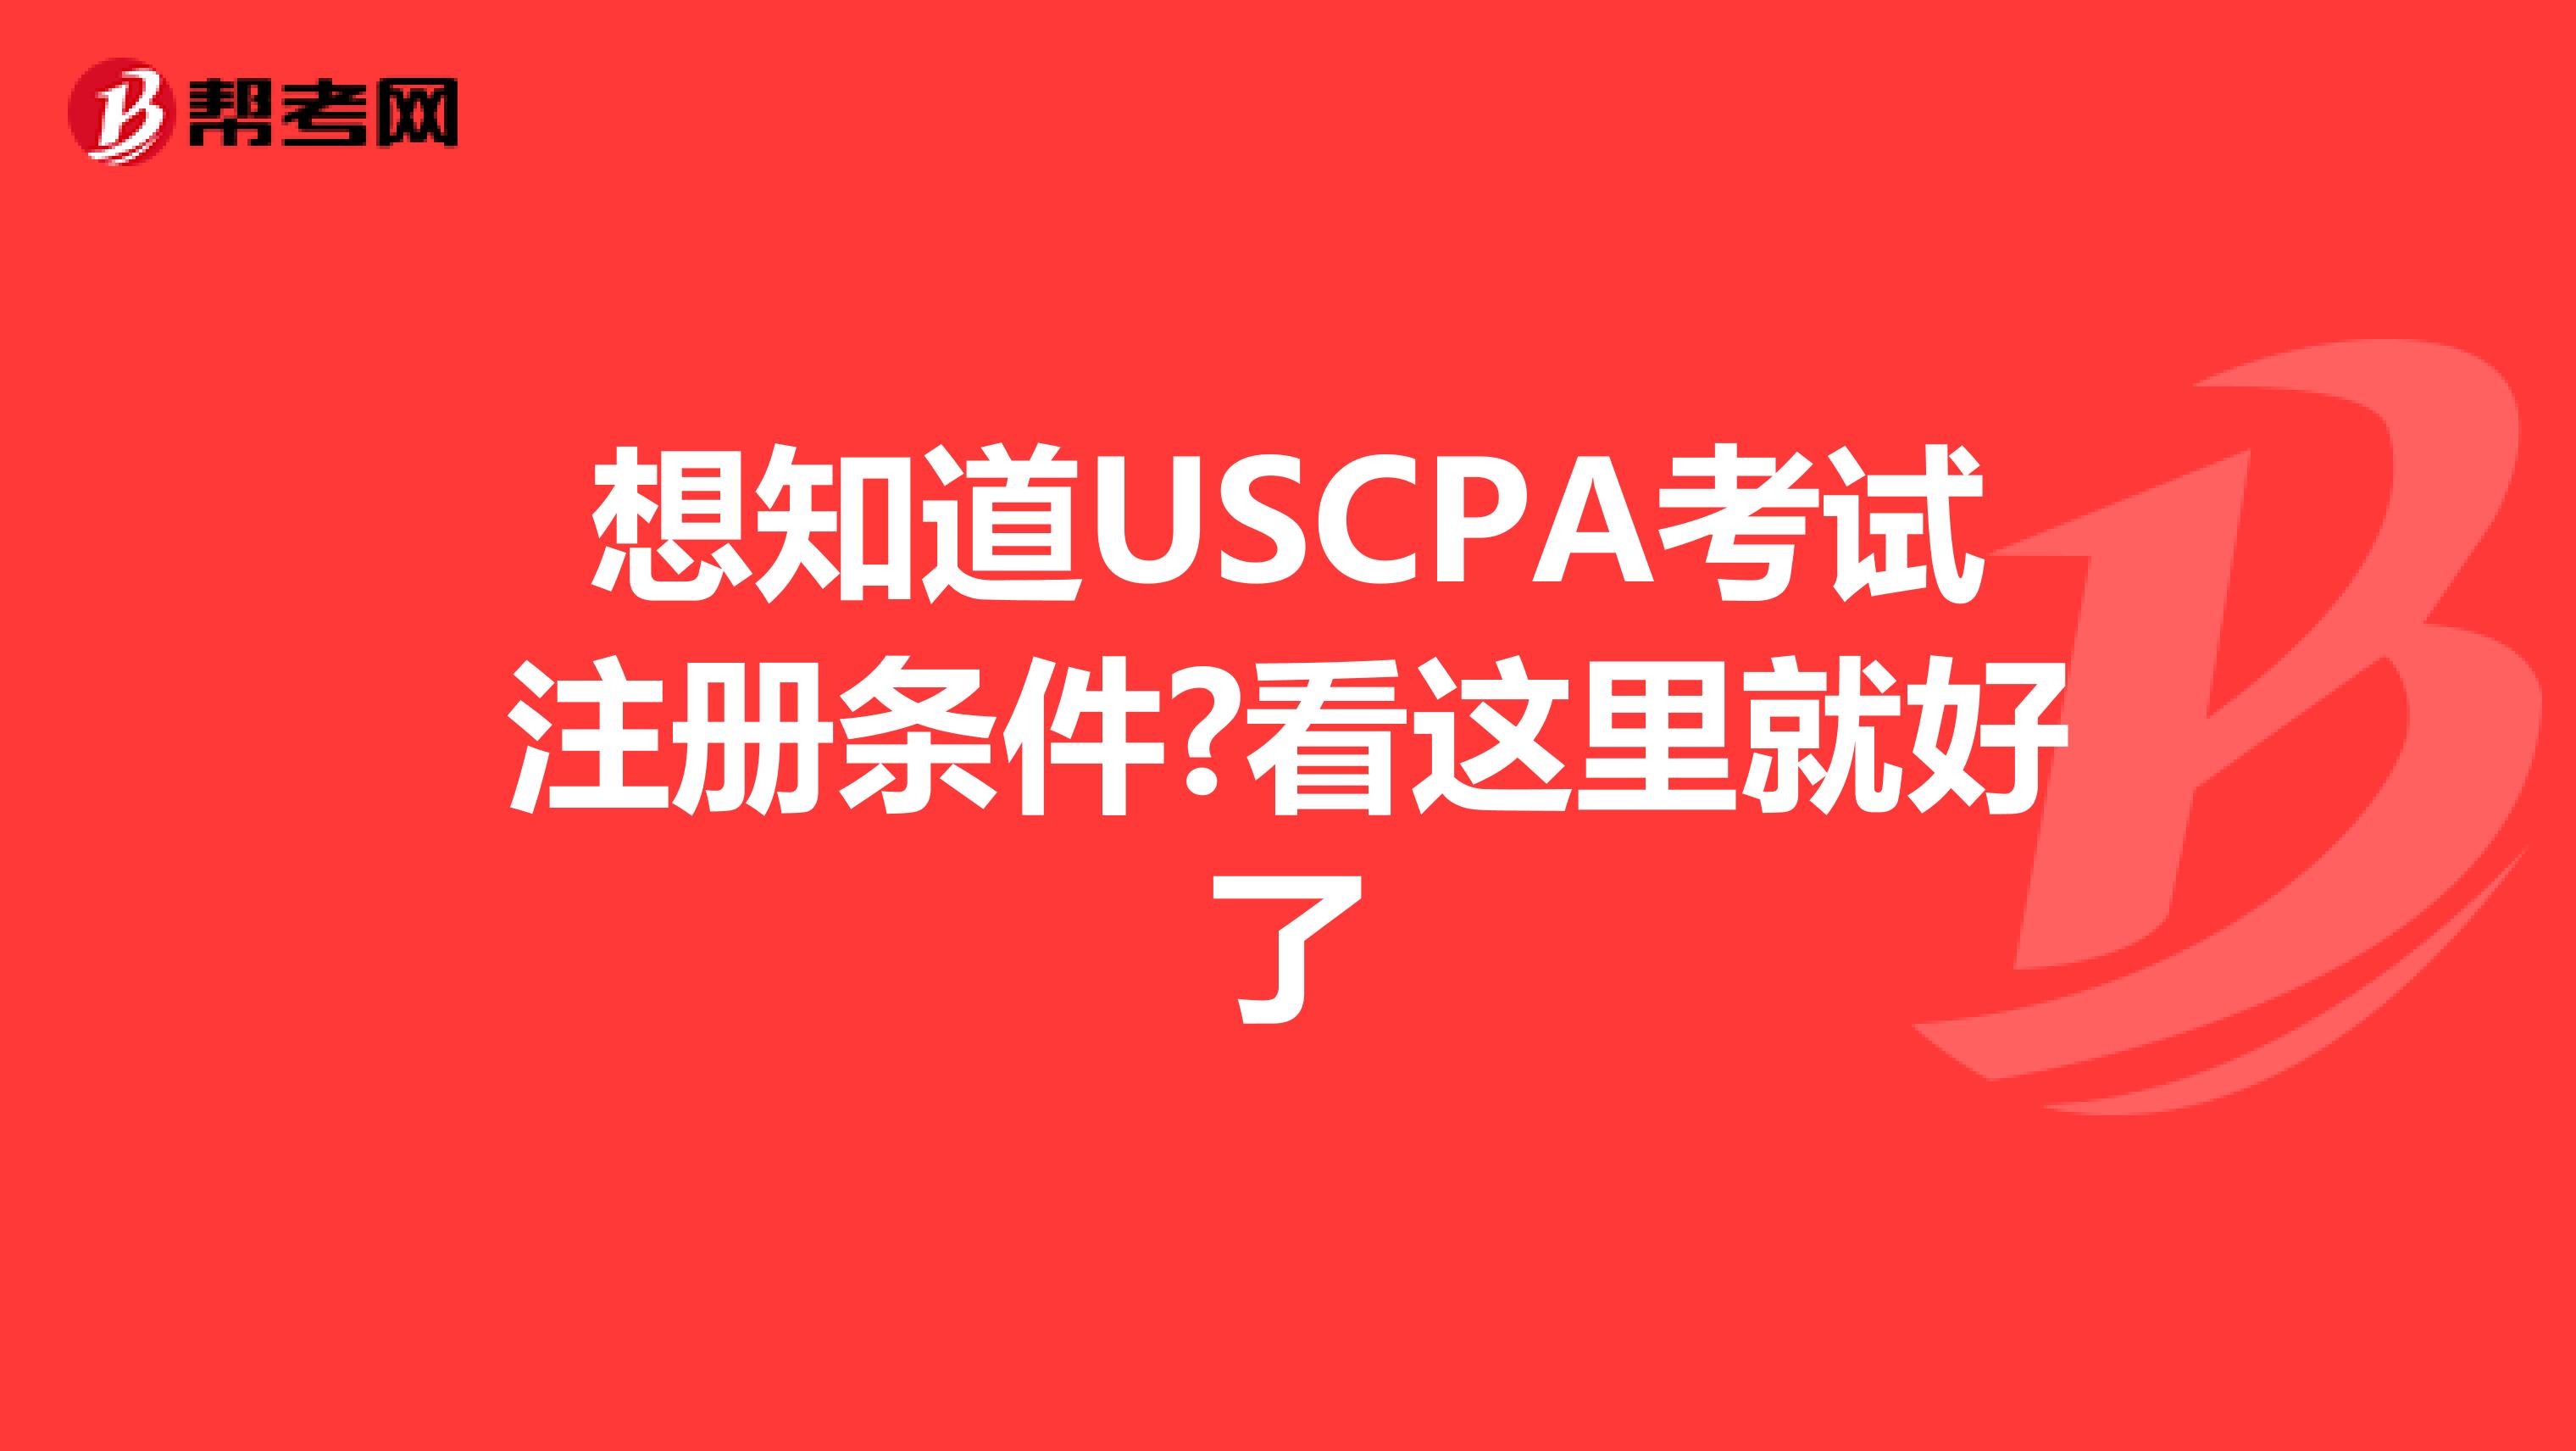 想知道USCPA考试注册条件?看这里就好了